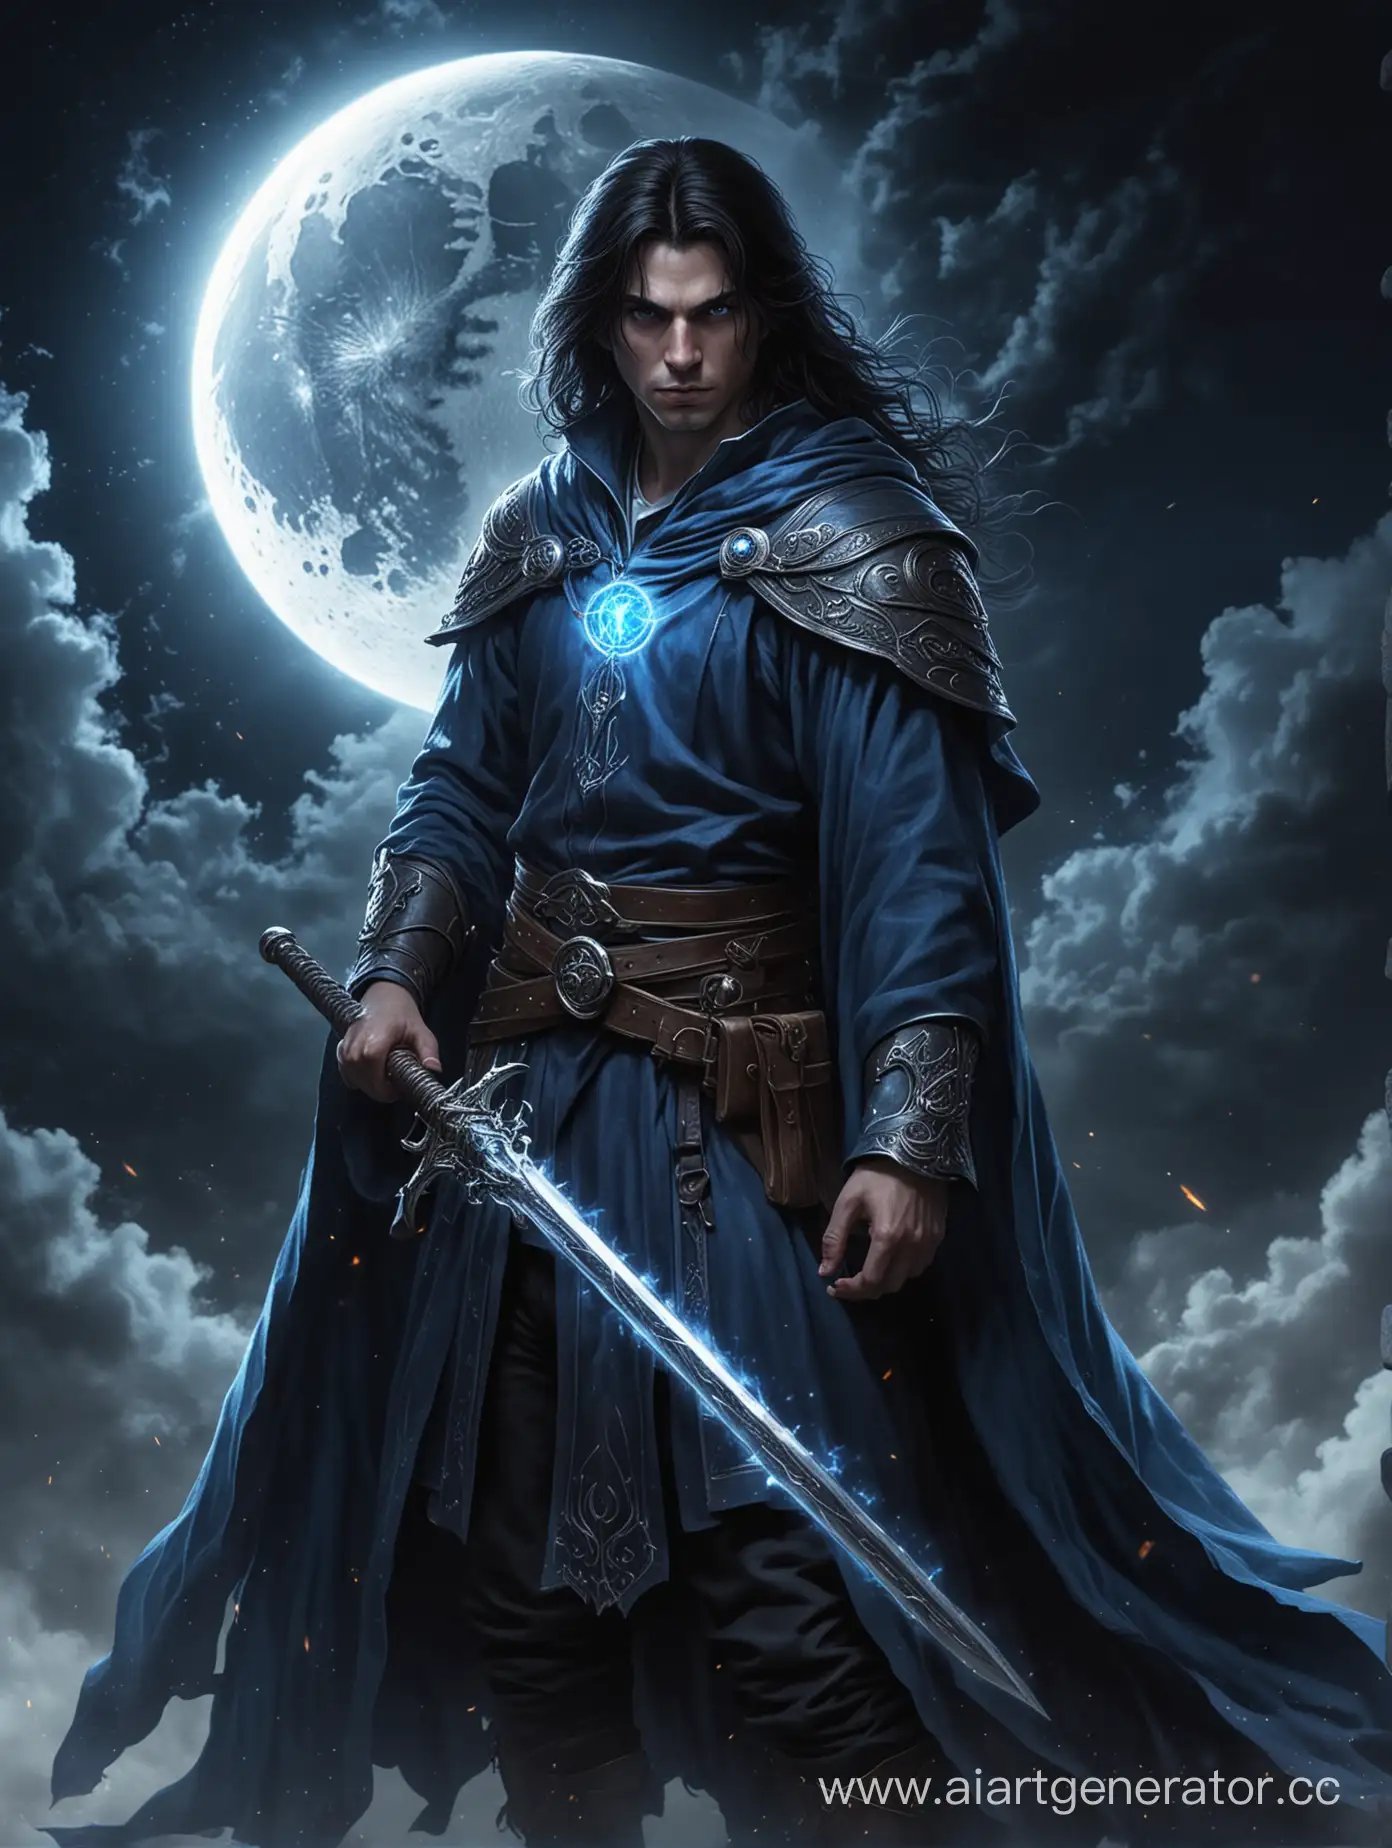 Молодой волшебник, синий плащ, на фоне луны, глаза светятся внутренним синим огнем, темные волосы до плеч, в руке меч, суровый взгляд, высокое качество, высокая детализация